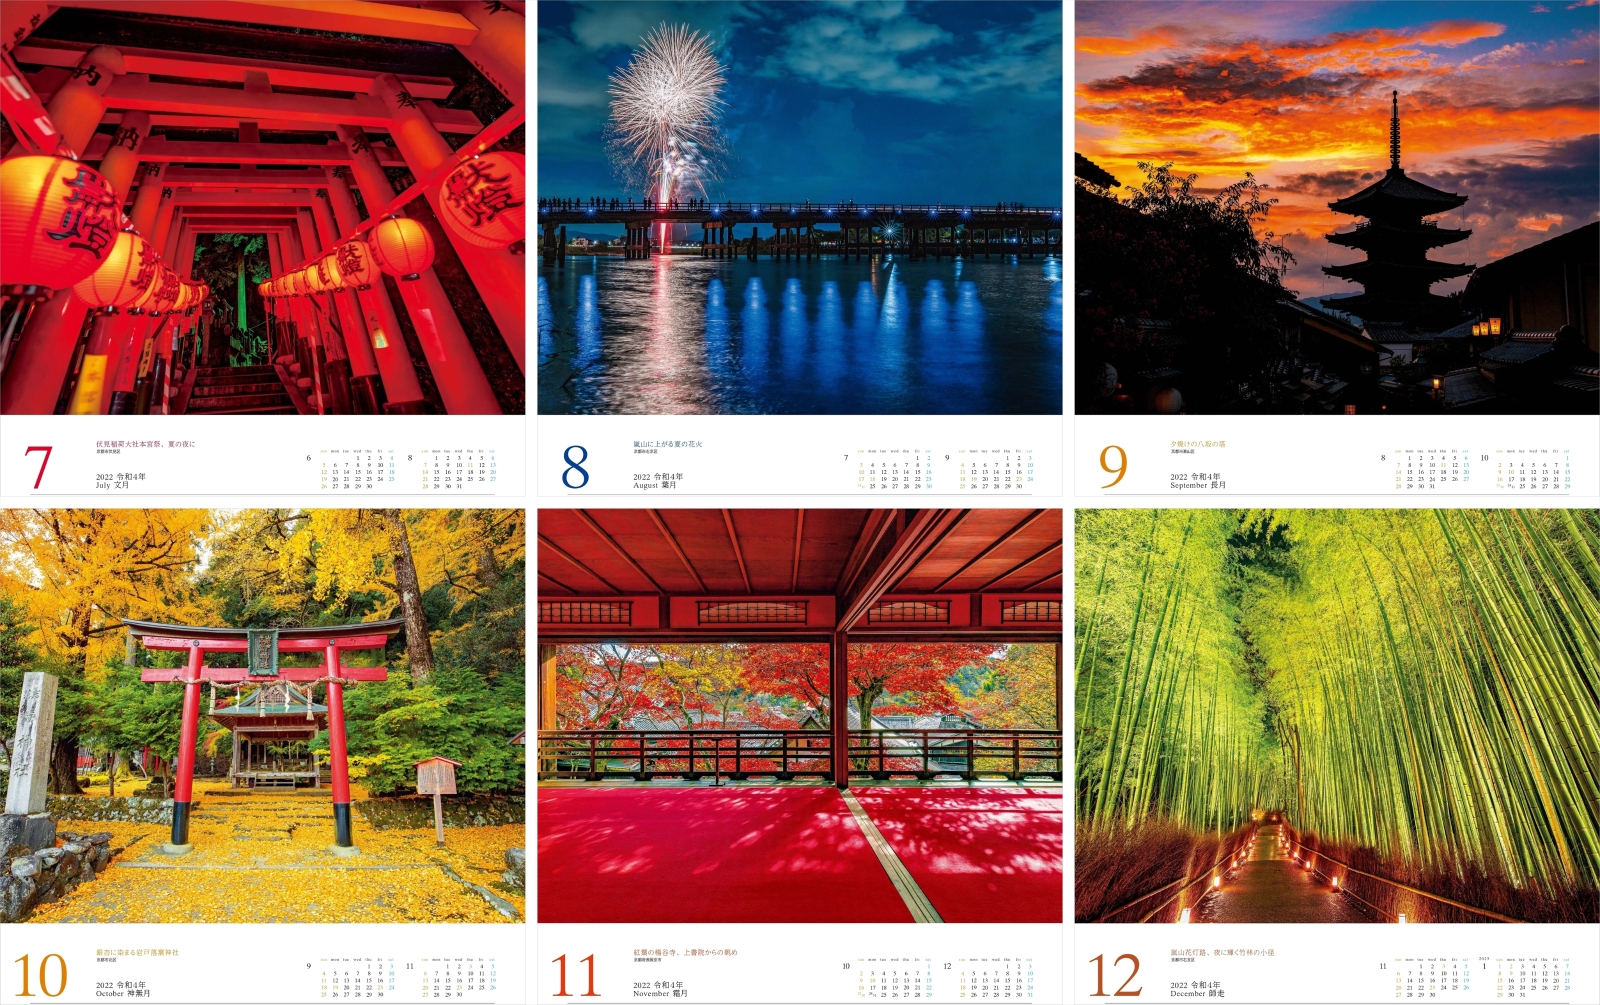 楽天ブックス 極彩色の京都ー美しき癒しの絶景カレンダー 22 本